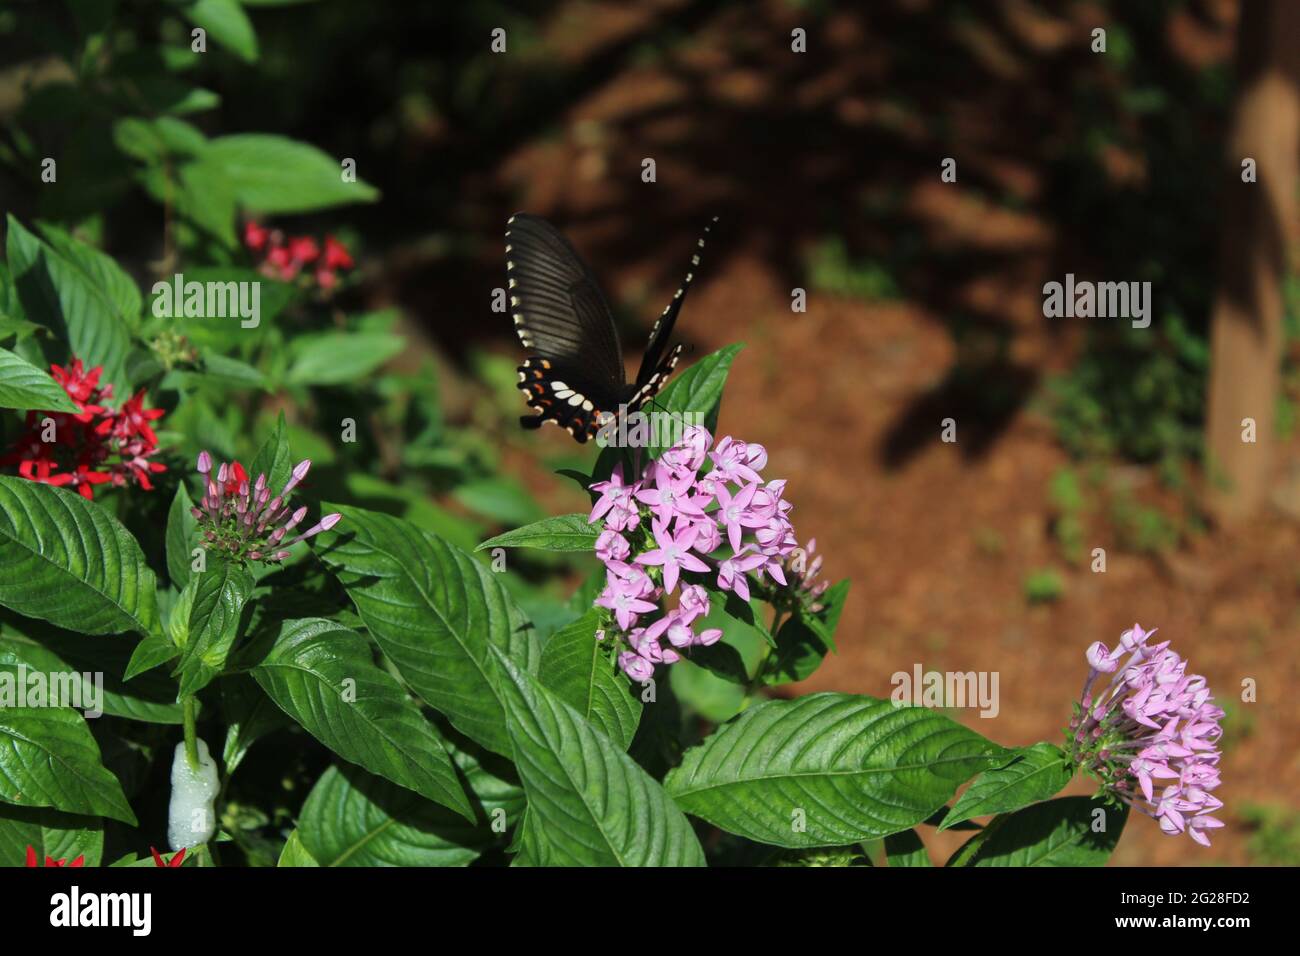 Schmetterling kommt, um Nektar aus einem kleinen Haufen violetter Blumen zu sammeln: Ägyptischer Sternhaufen (Rubiaceae) Pentas lanceolata (Forssk.) Defler, Pentas Stockfoto